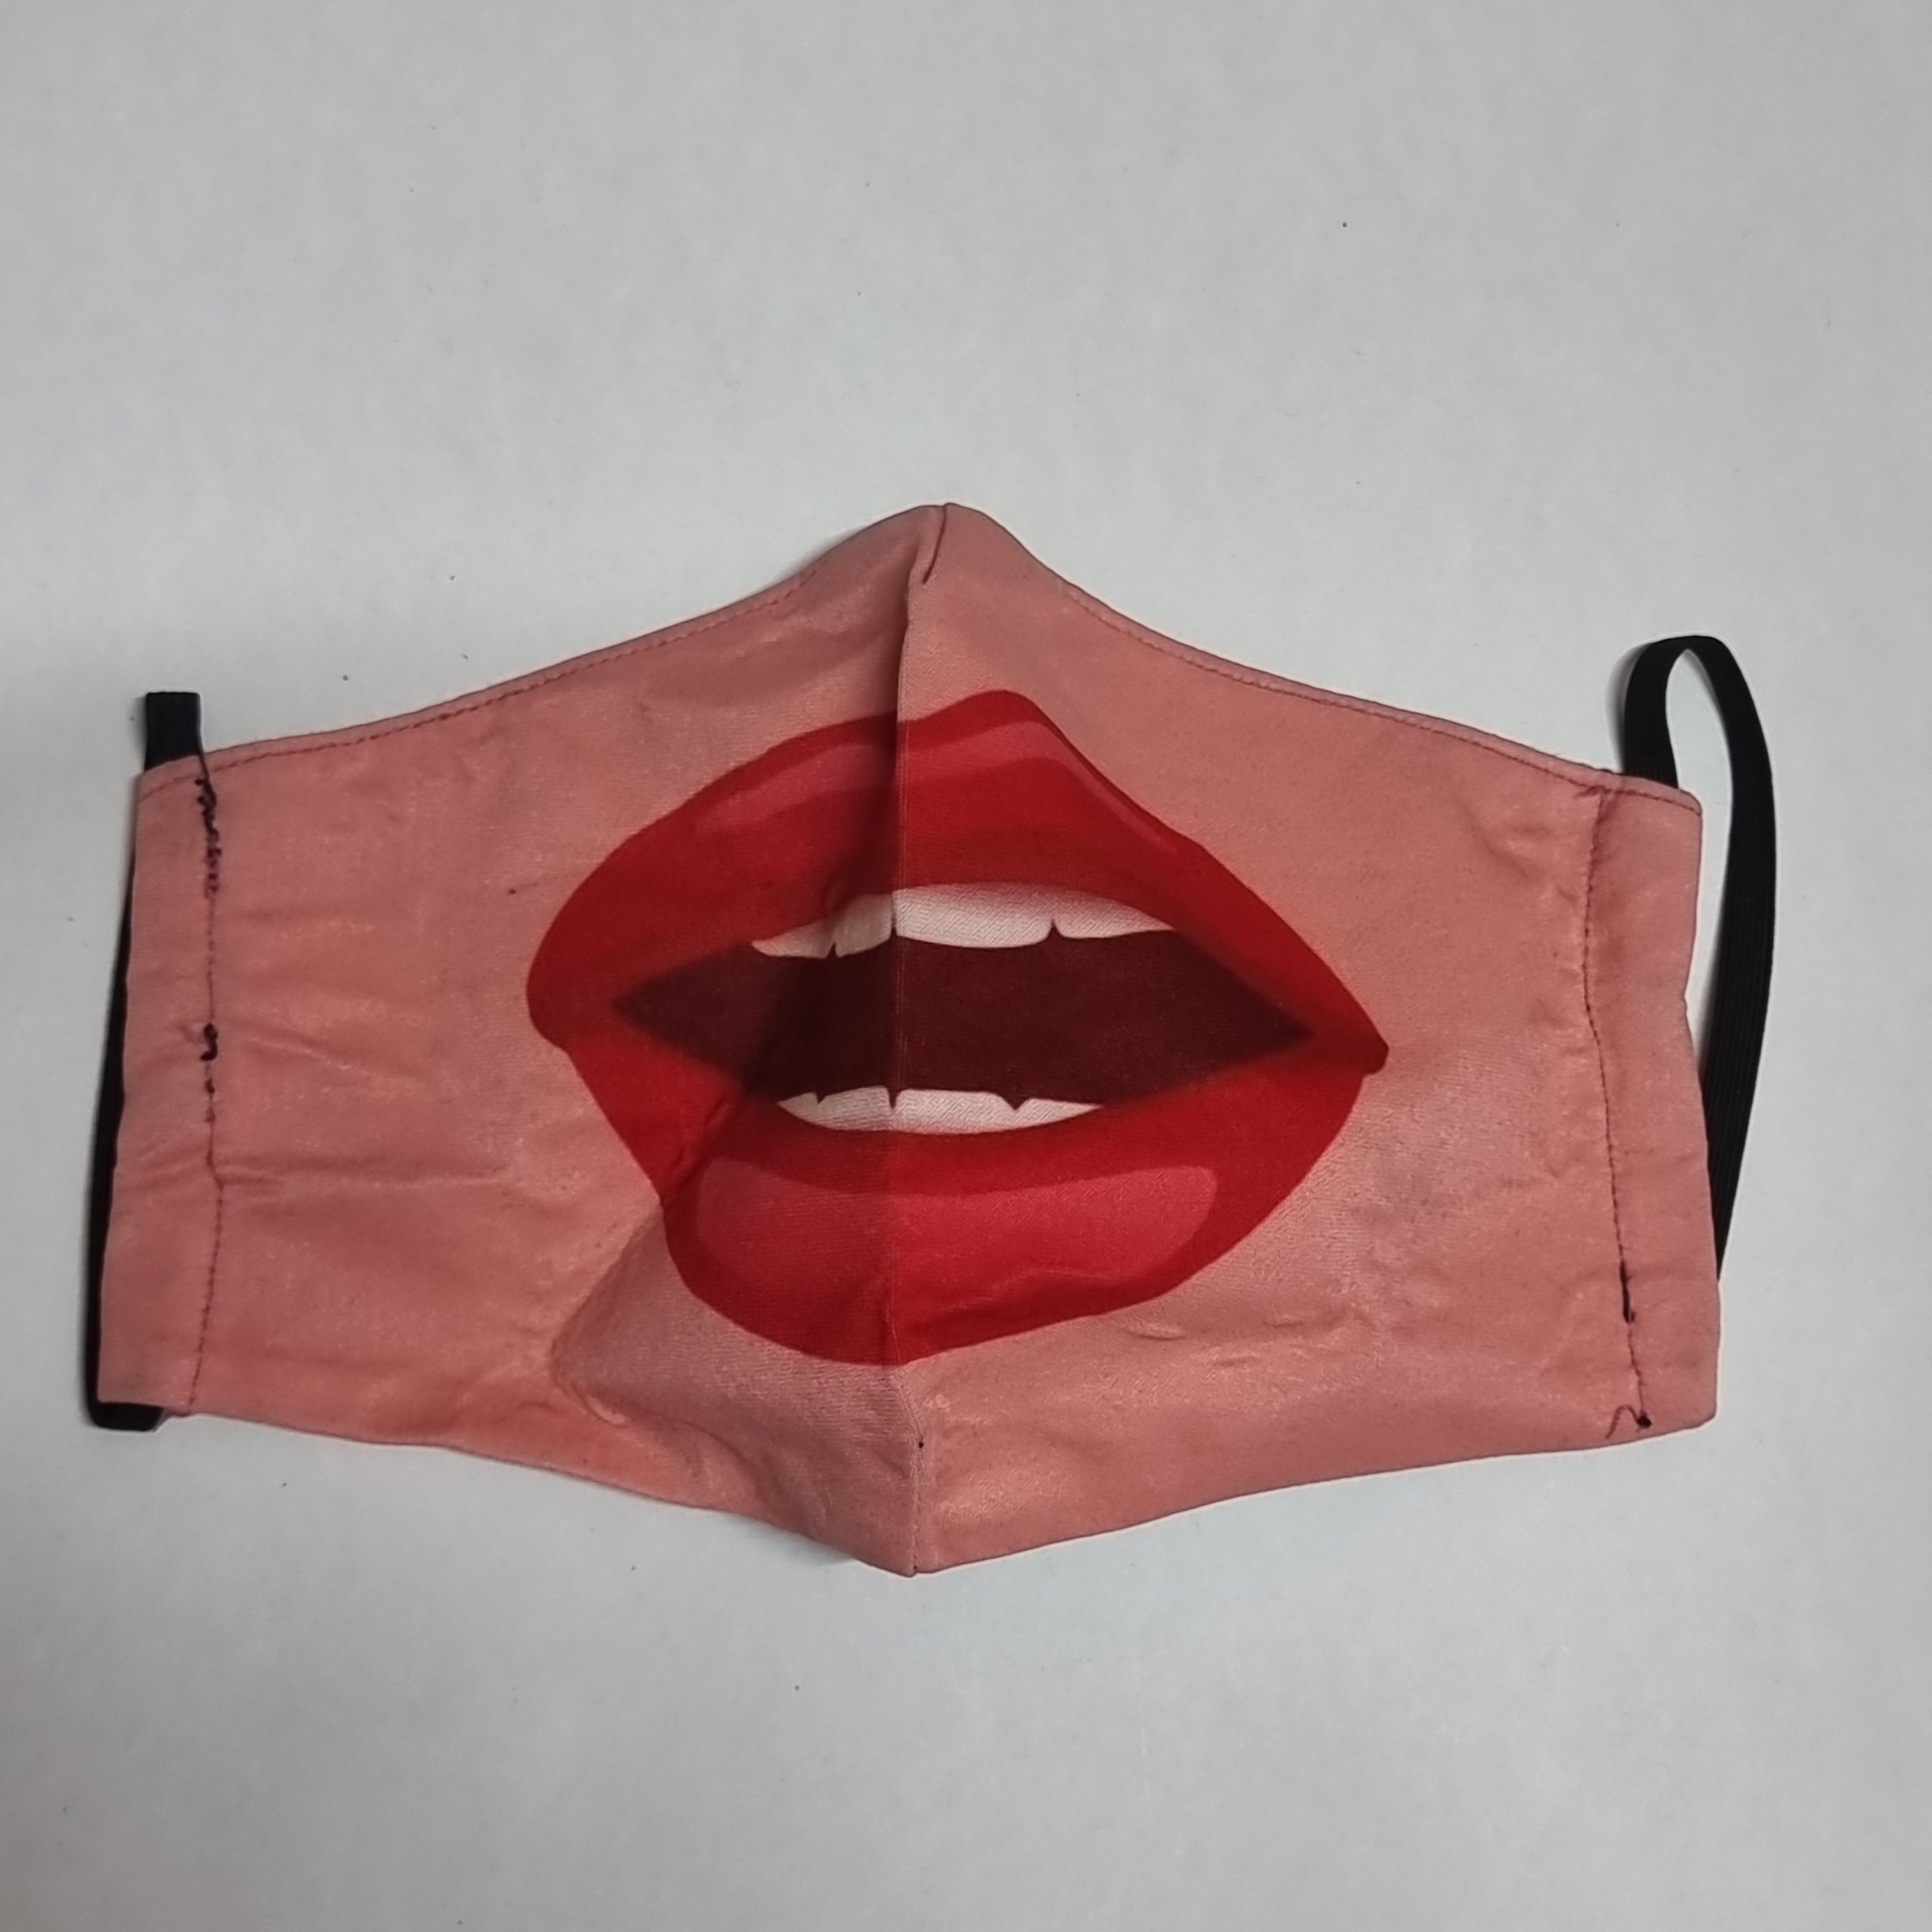 Woman lips face mask